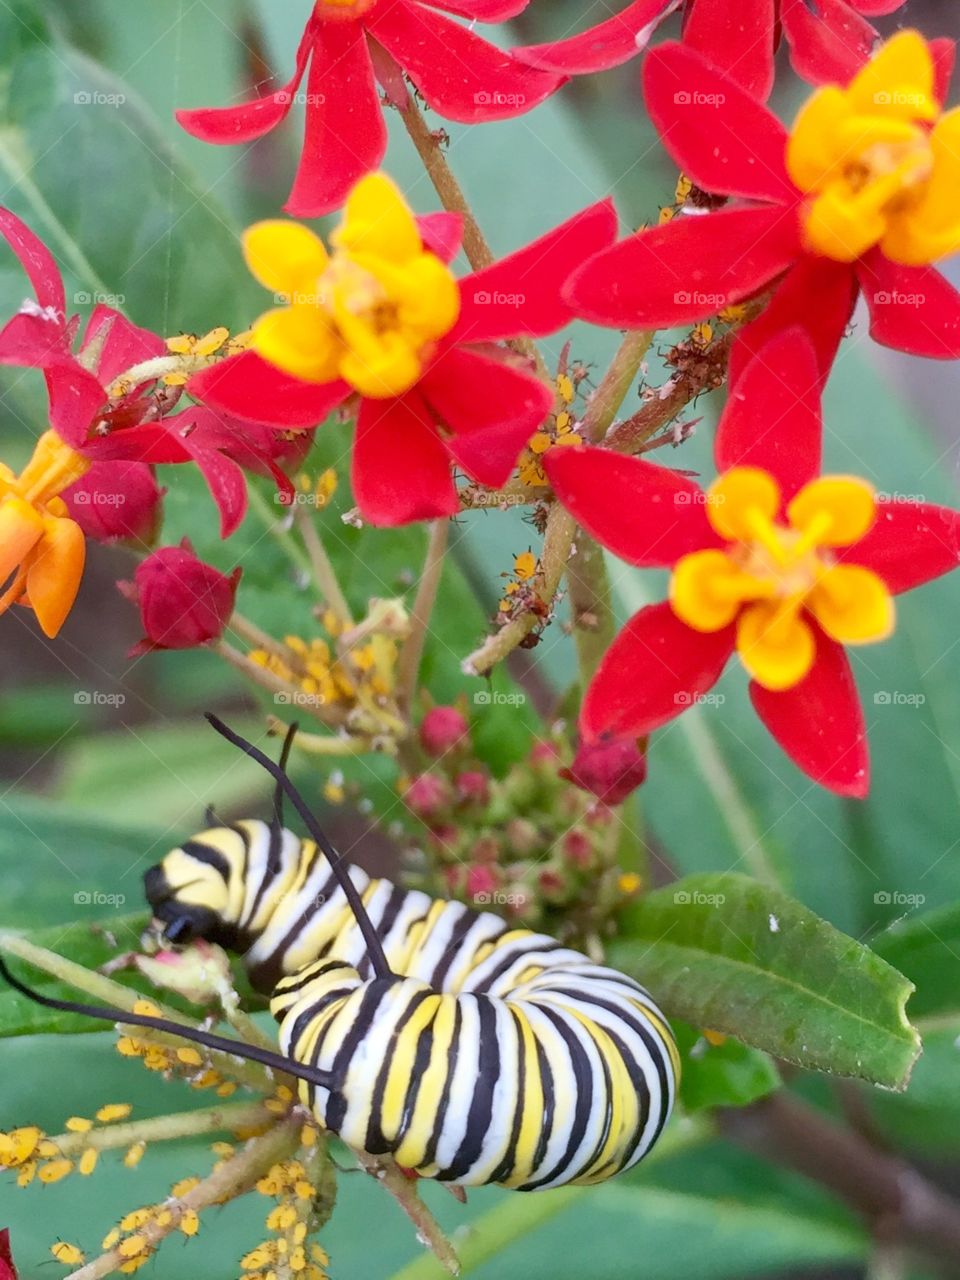 Monarch caterpillar . From our butterfly garden 
